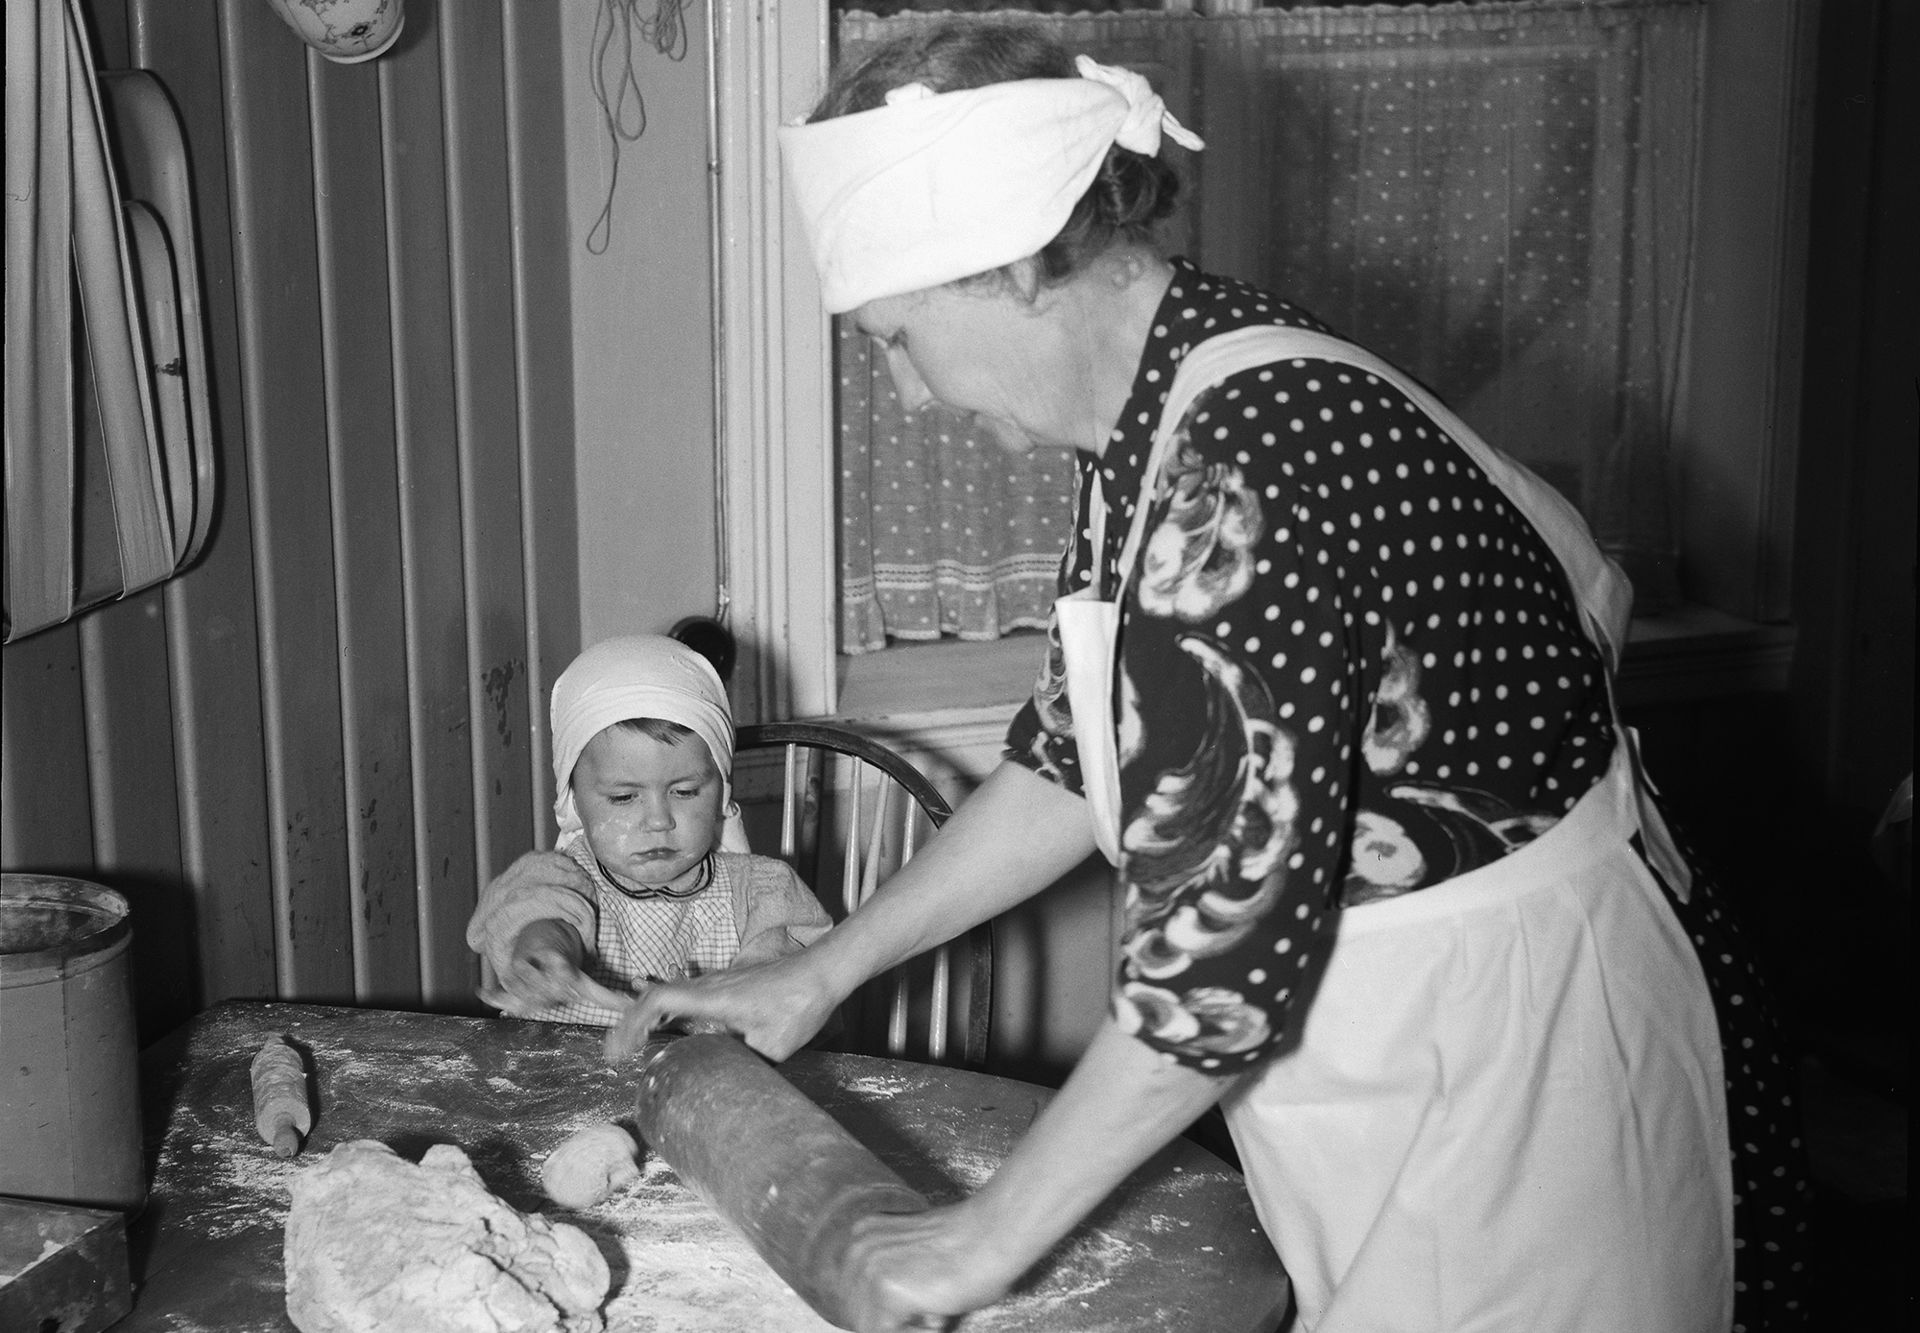 Bestemor bruker kjevle på en deig, et lite barn ser på. Sort-hvitt bilde.